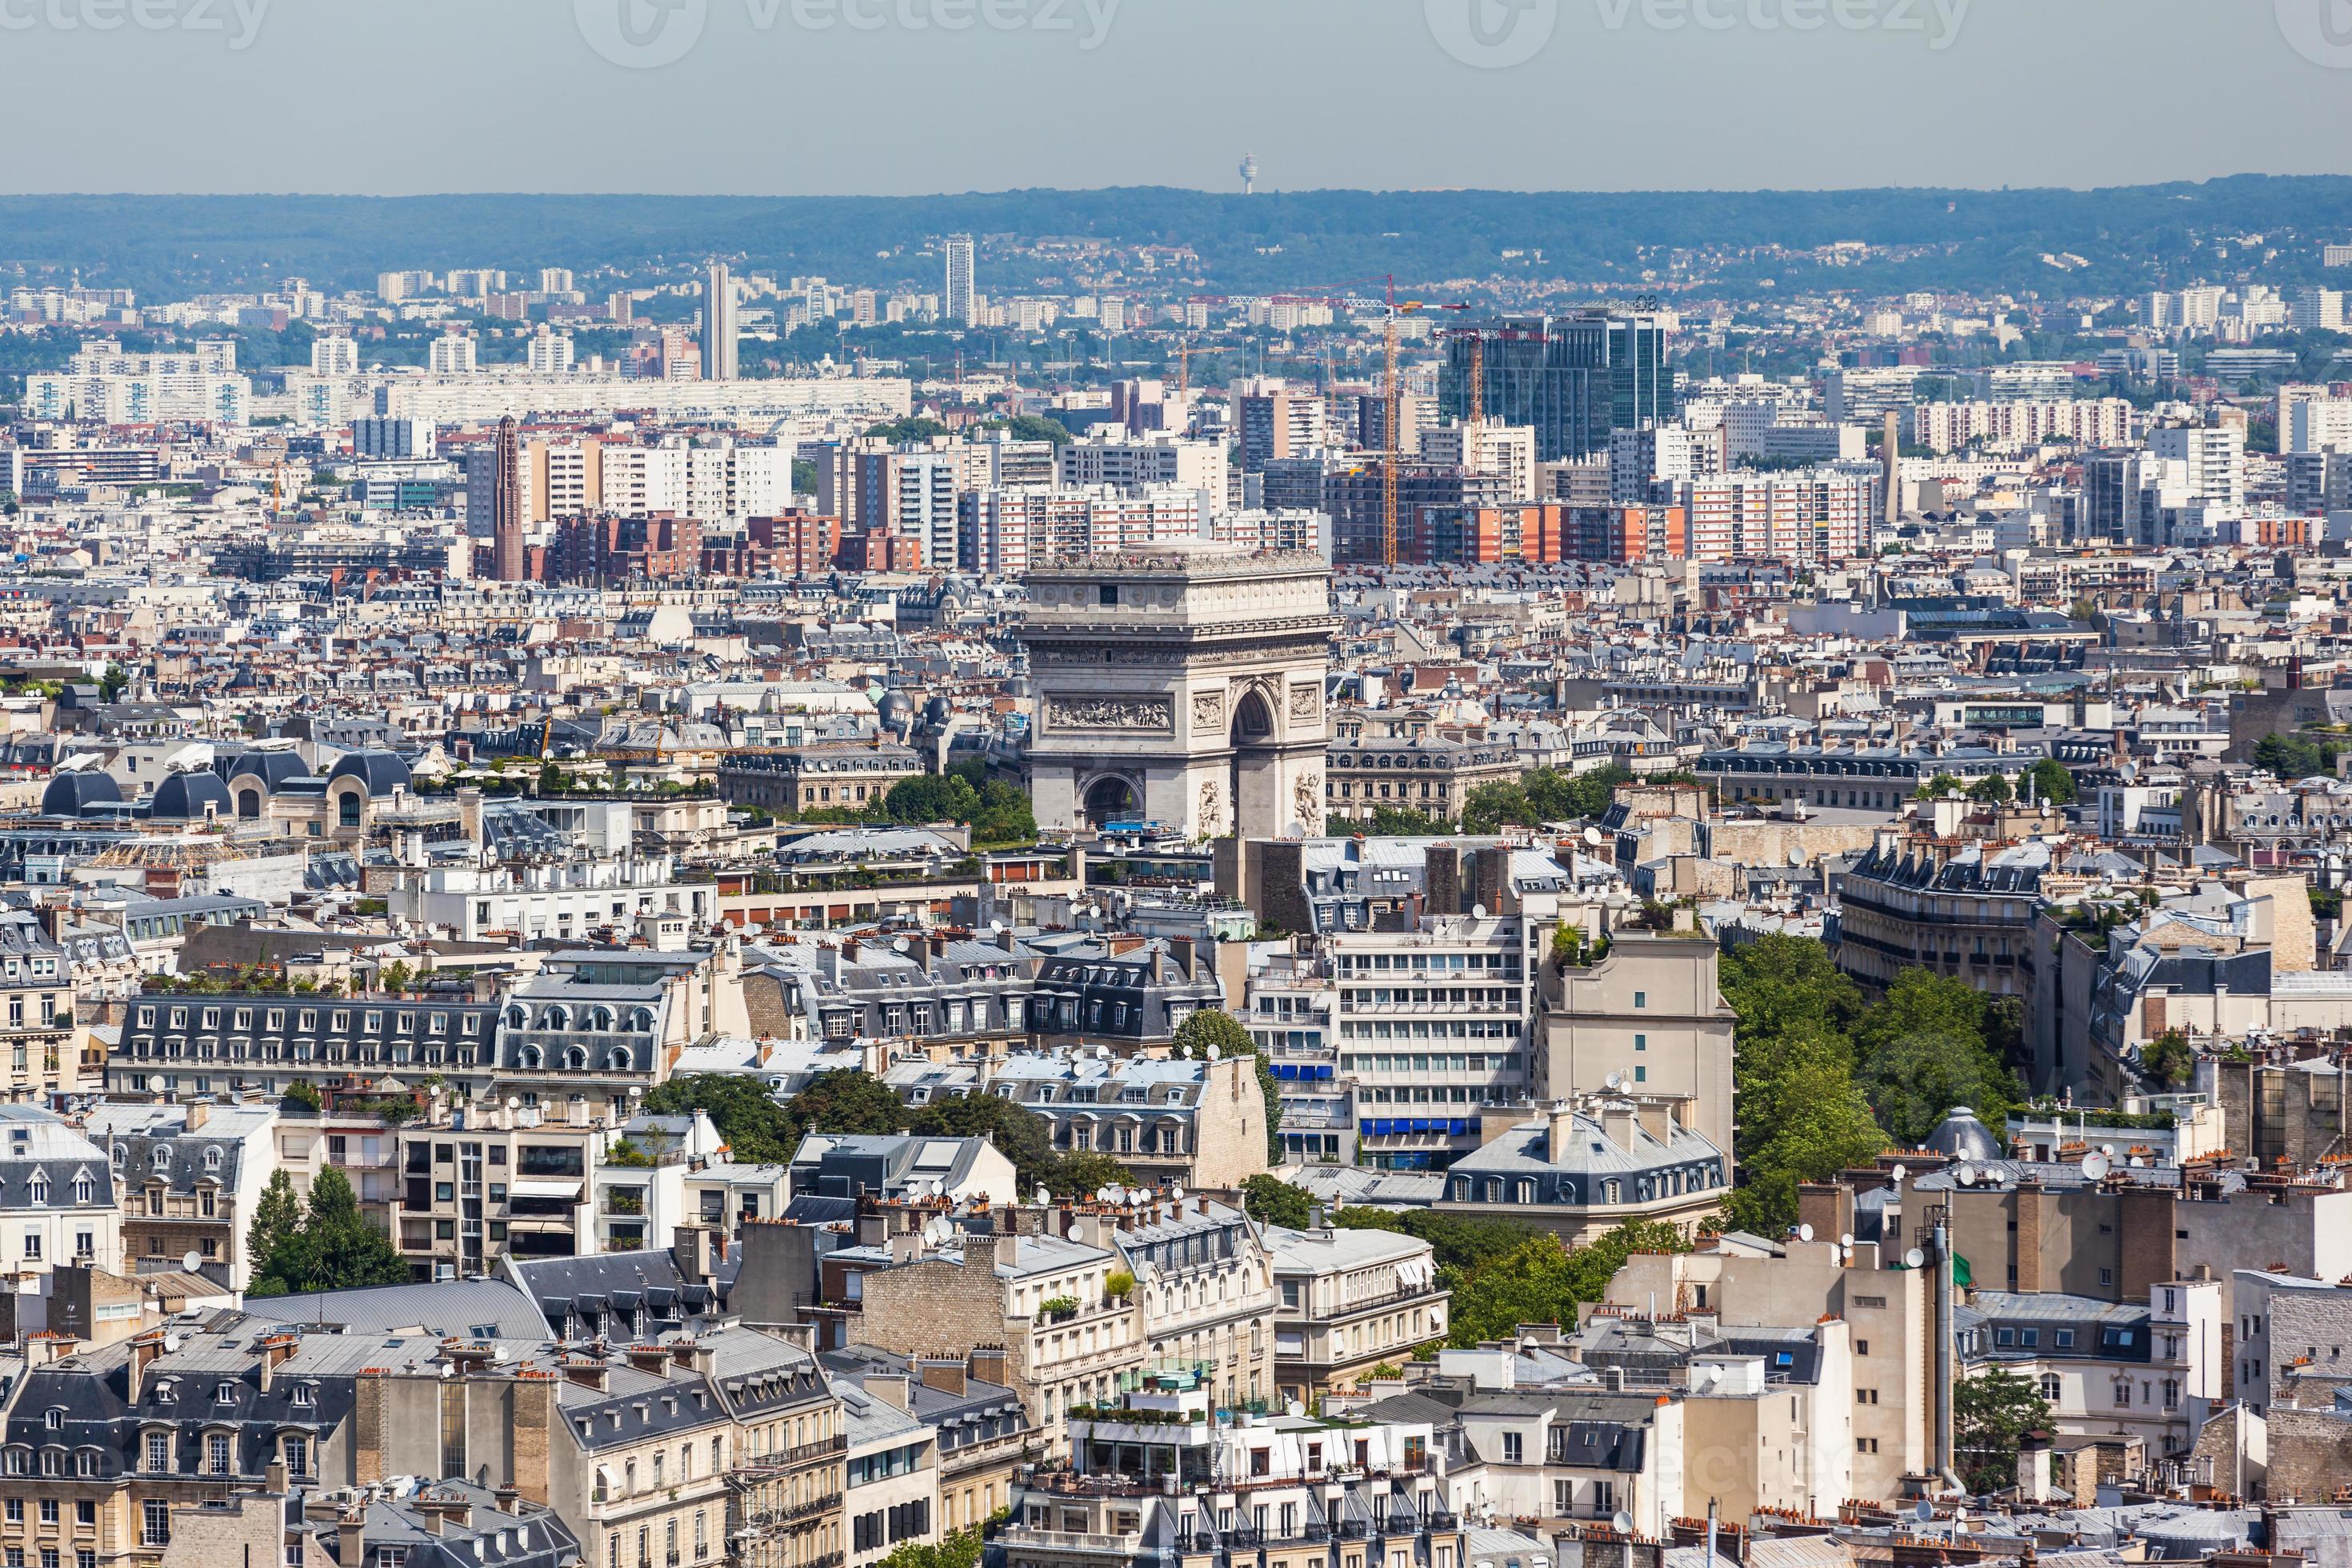 paisaje urbano de paris foto